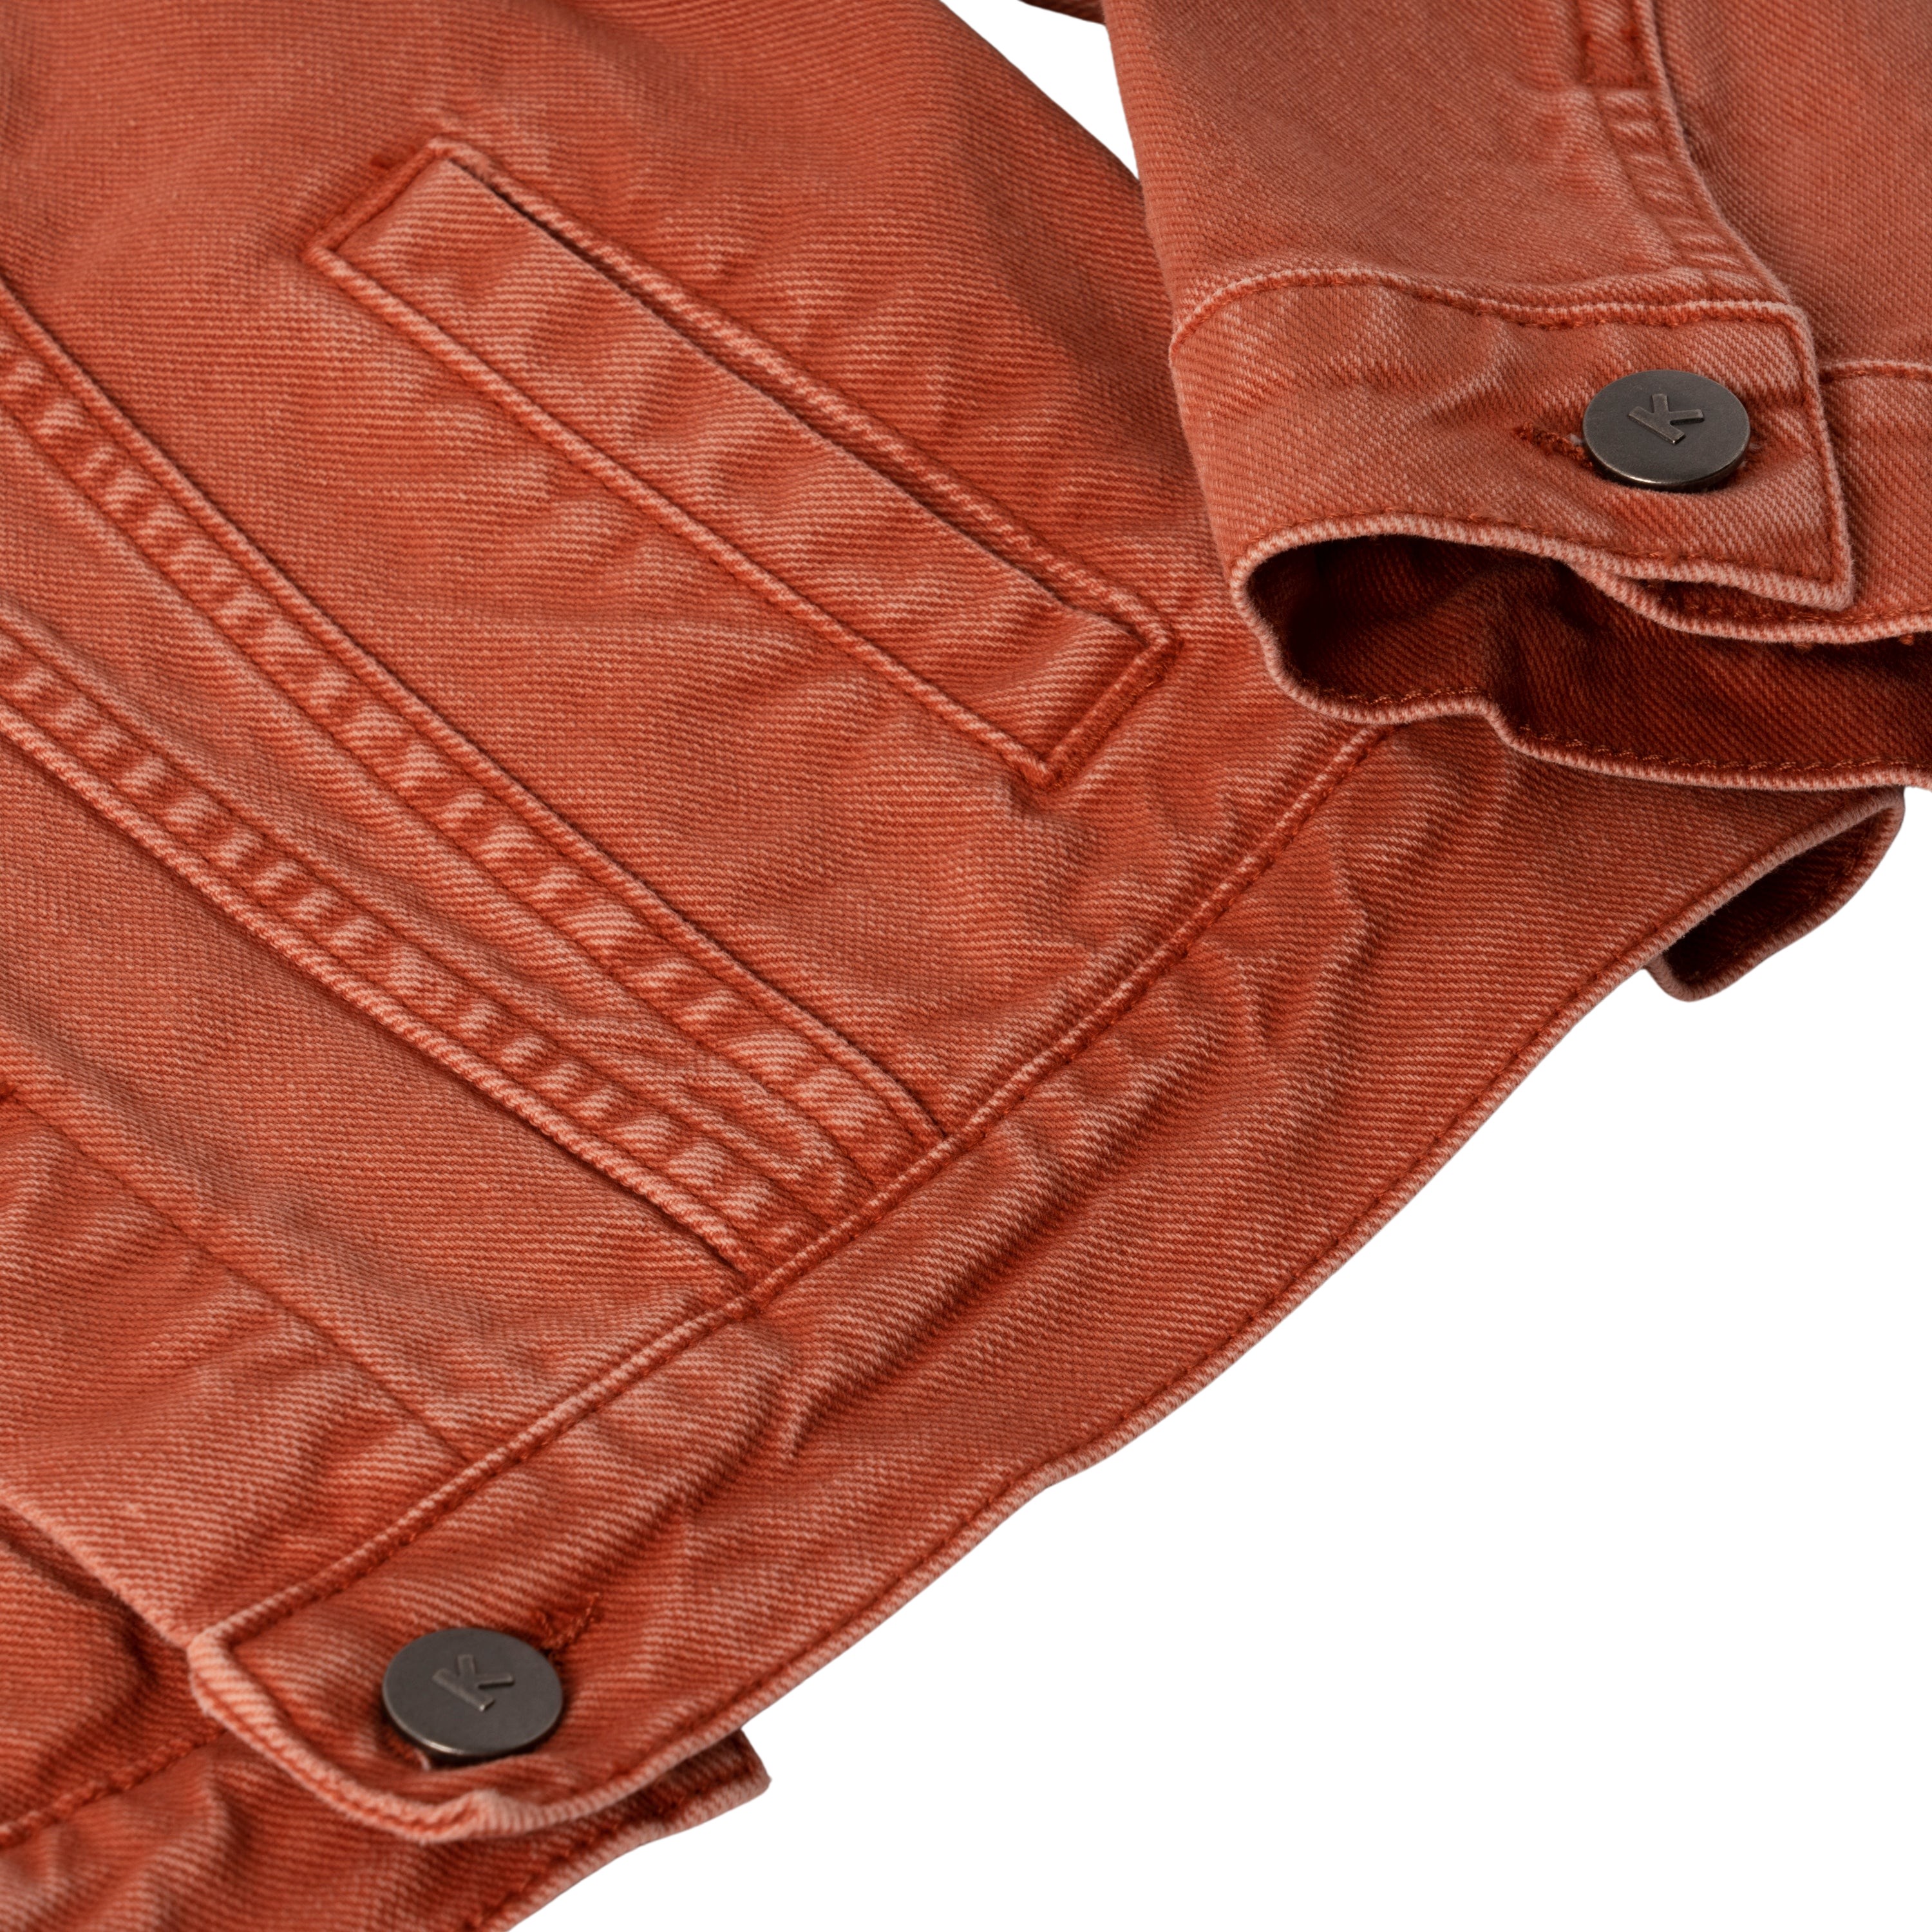 Vero Moda Hot Soya Denim Jacket in Burnt Orange | iCLOTHING - iCLOTHING